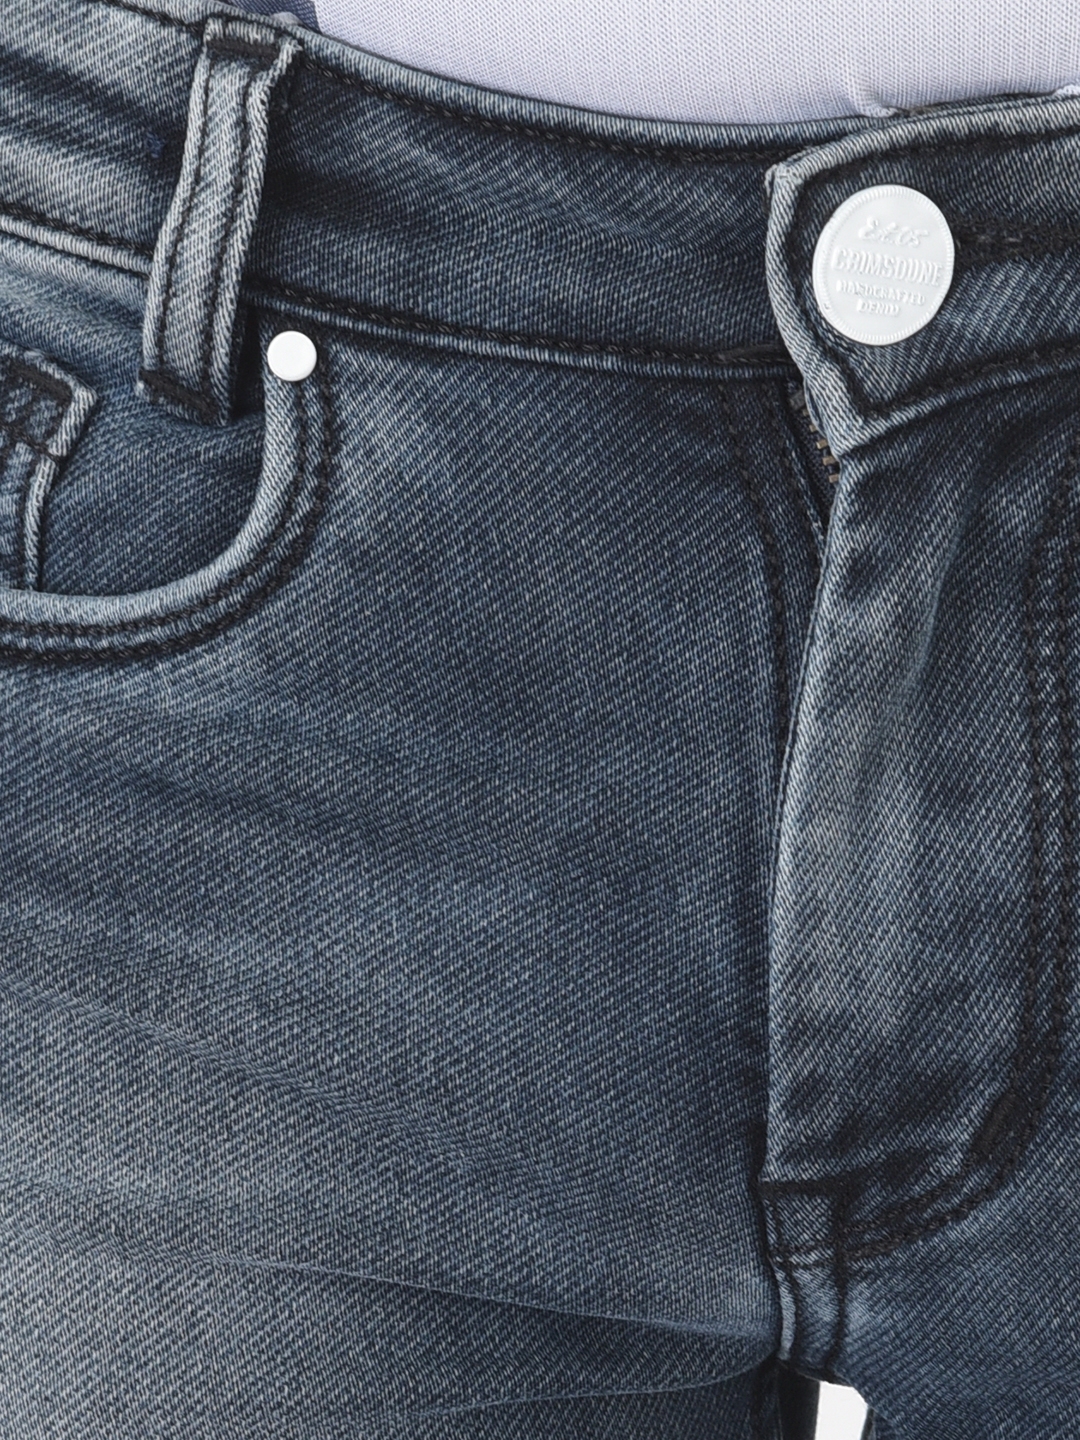 Crimsoune Club | Crimsoune Club Boy Grey Solid Light Fade Jeans 5